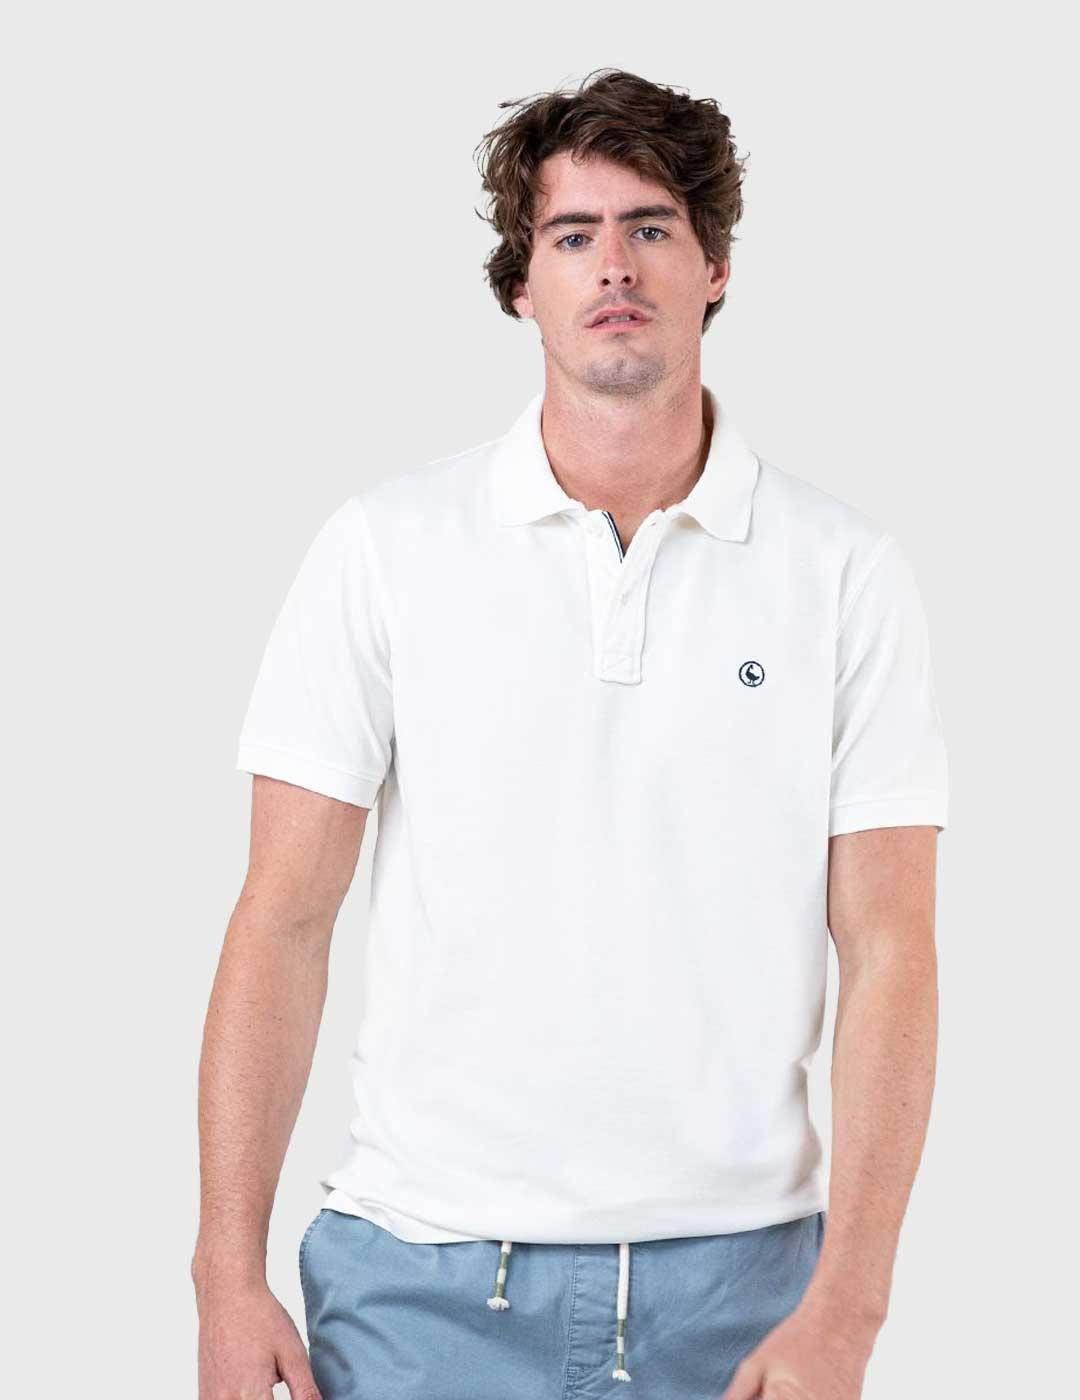 El Ganso Polo Pique Garment Dyed blanco para hombre